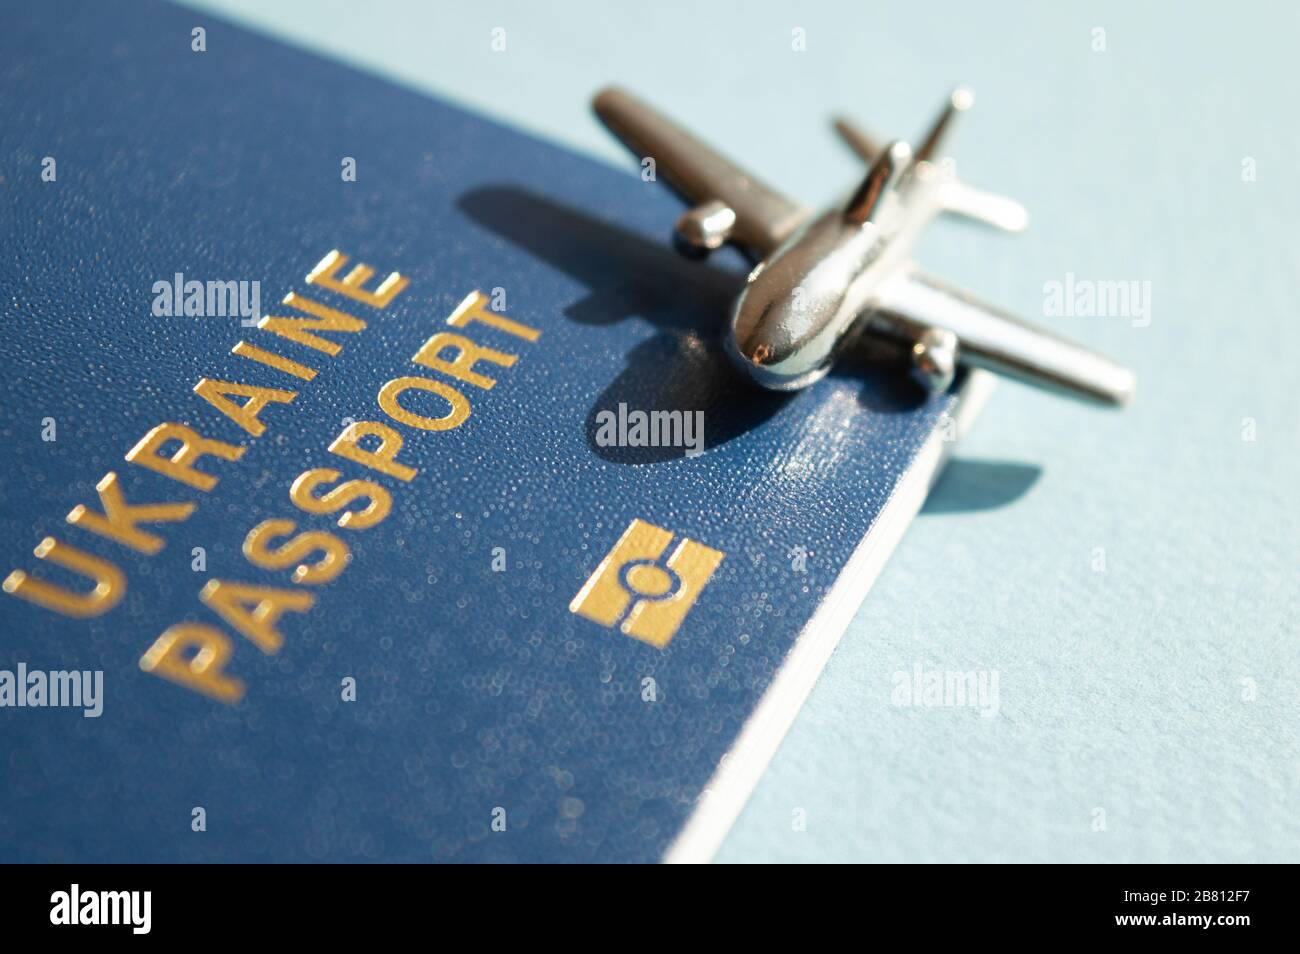 Passeport étranger ukrainien avec figurine métallique de petit avion sur fond bleu clair ensoleillé. Photo conceptuelle tendance de voyage et d'aviation Banque D'Images